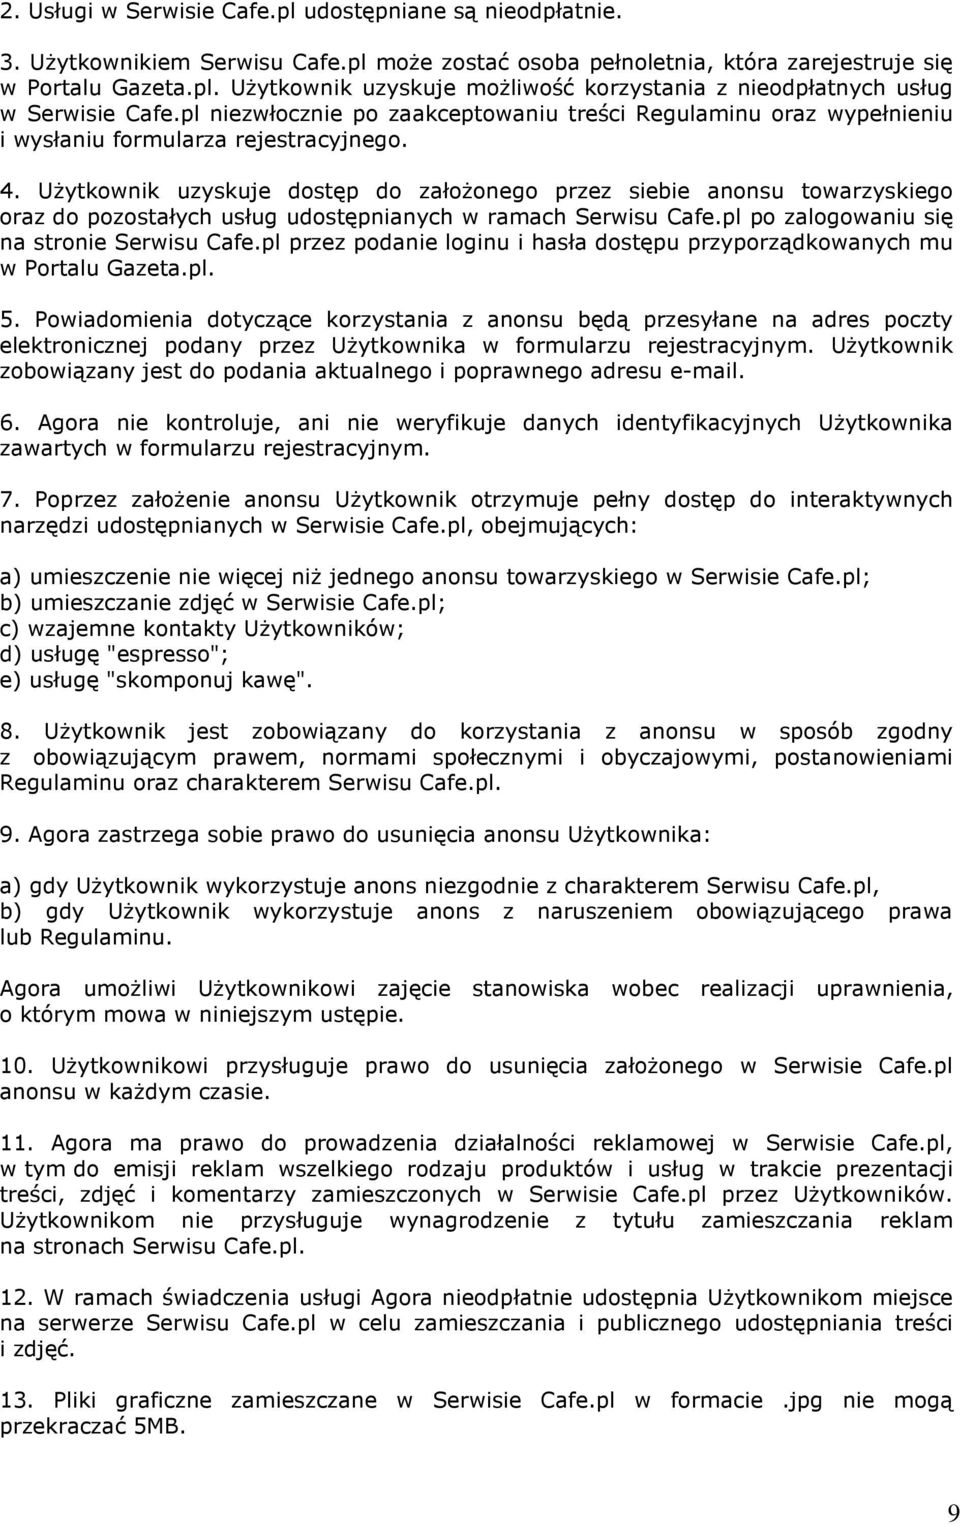 Użytkownik uzyskuje dostęp do założonego przez siebie anonsu towarzyskiego oraz do pozostałych usług udostępnianych w ramach Serwisu Cafe.pl po zalogowaniu się na stronie Serwisu Cafe.